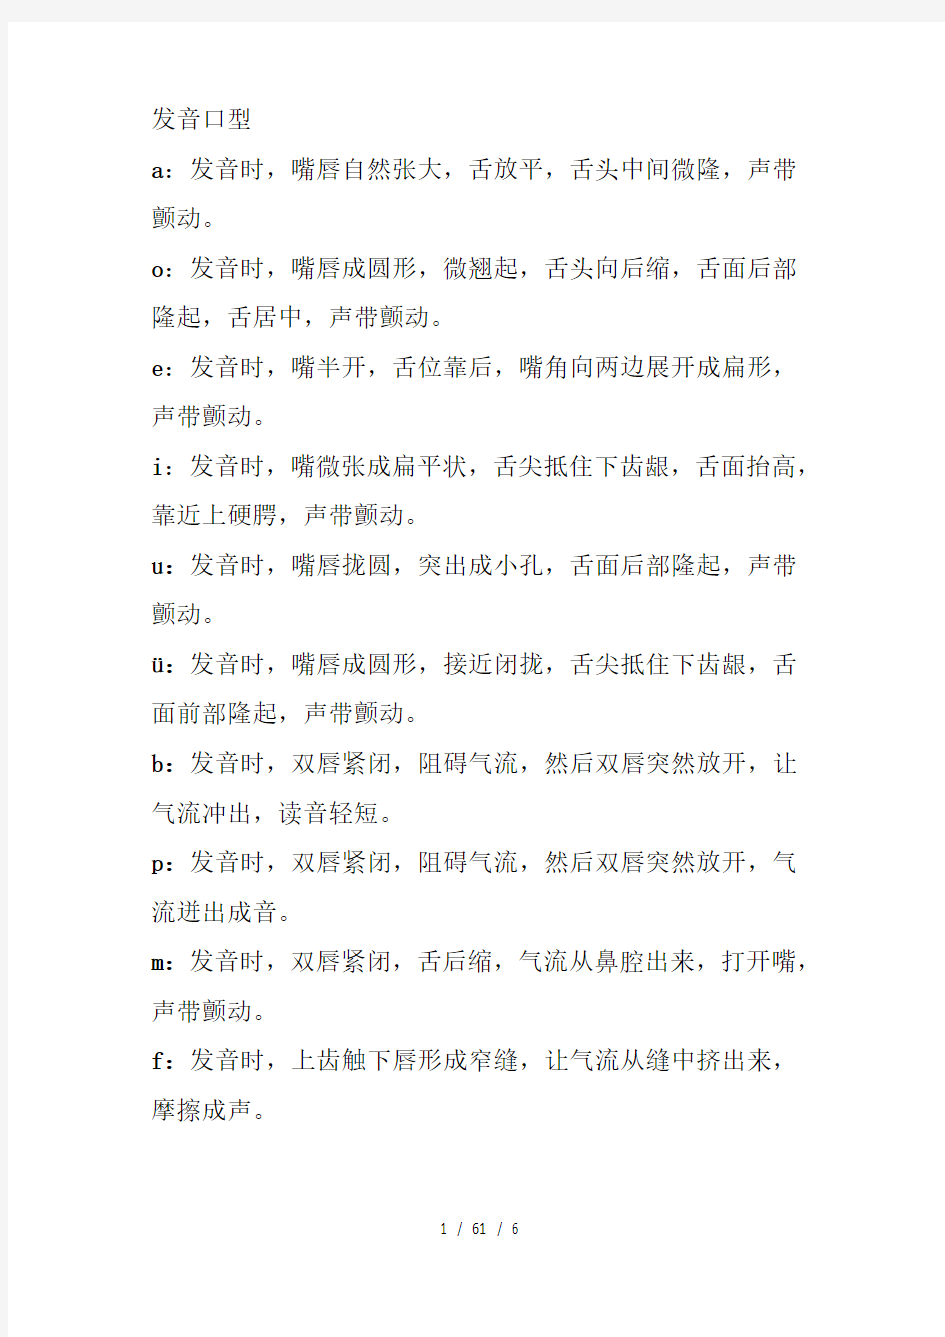 汉语拼音发音口型